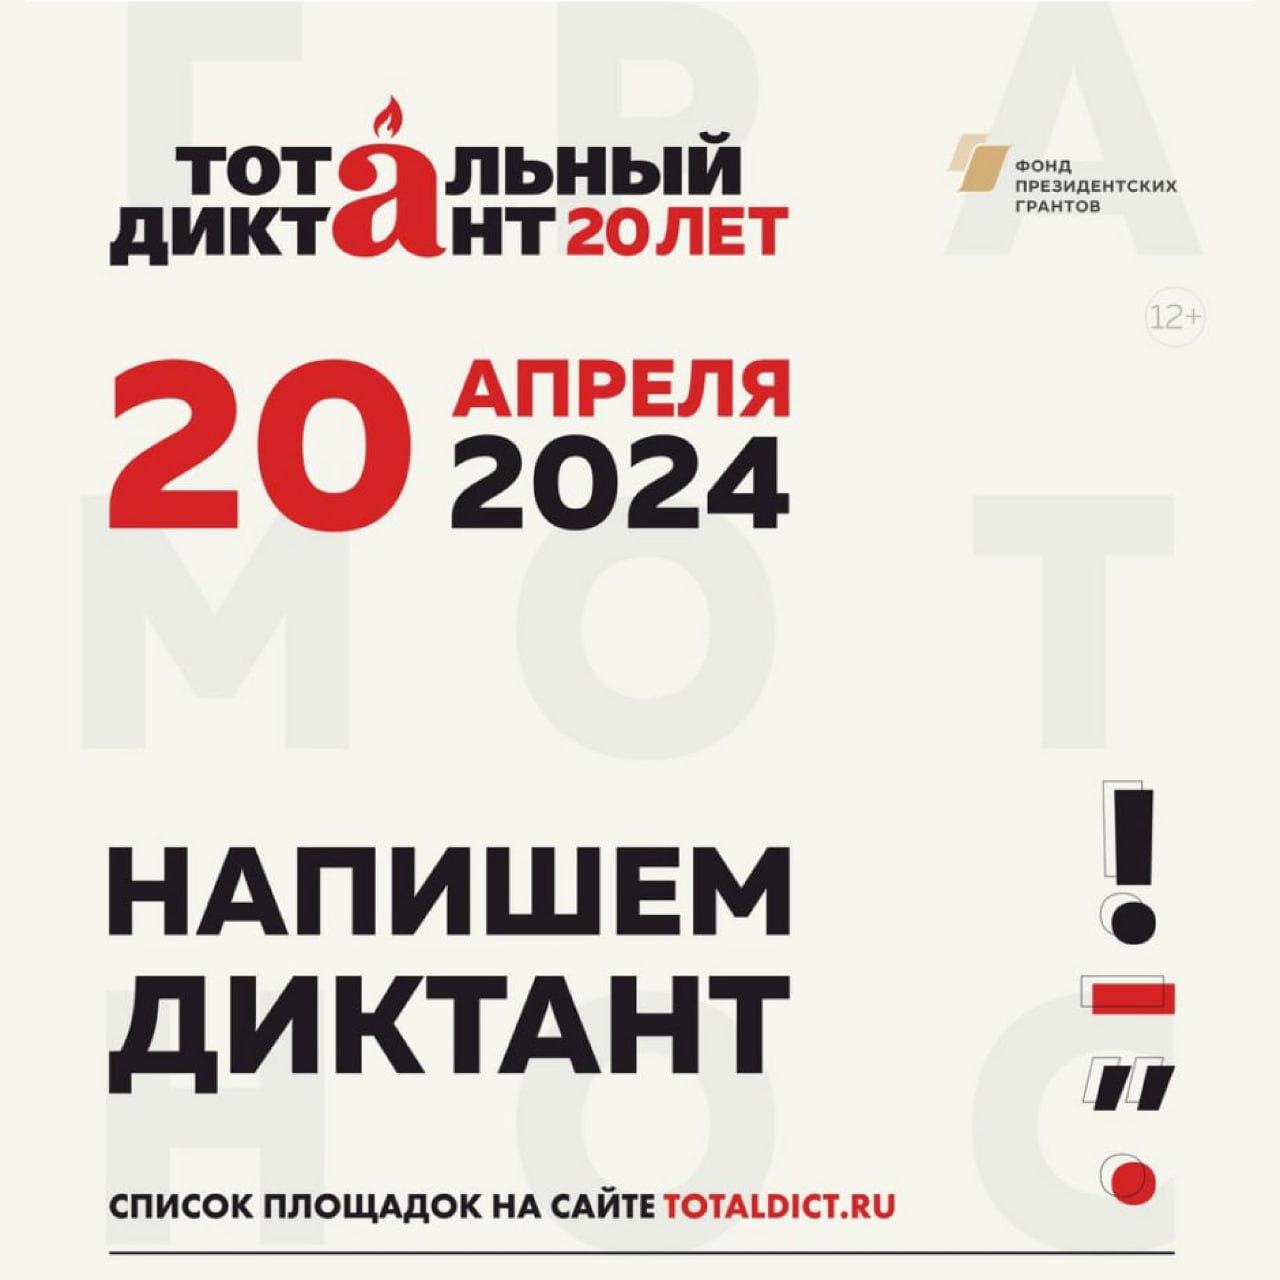 20 апреля Ставрополье присоединится к Всероссийской акции &amp;quot;Тотальный диктант&amp;quot;.